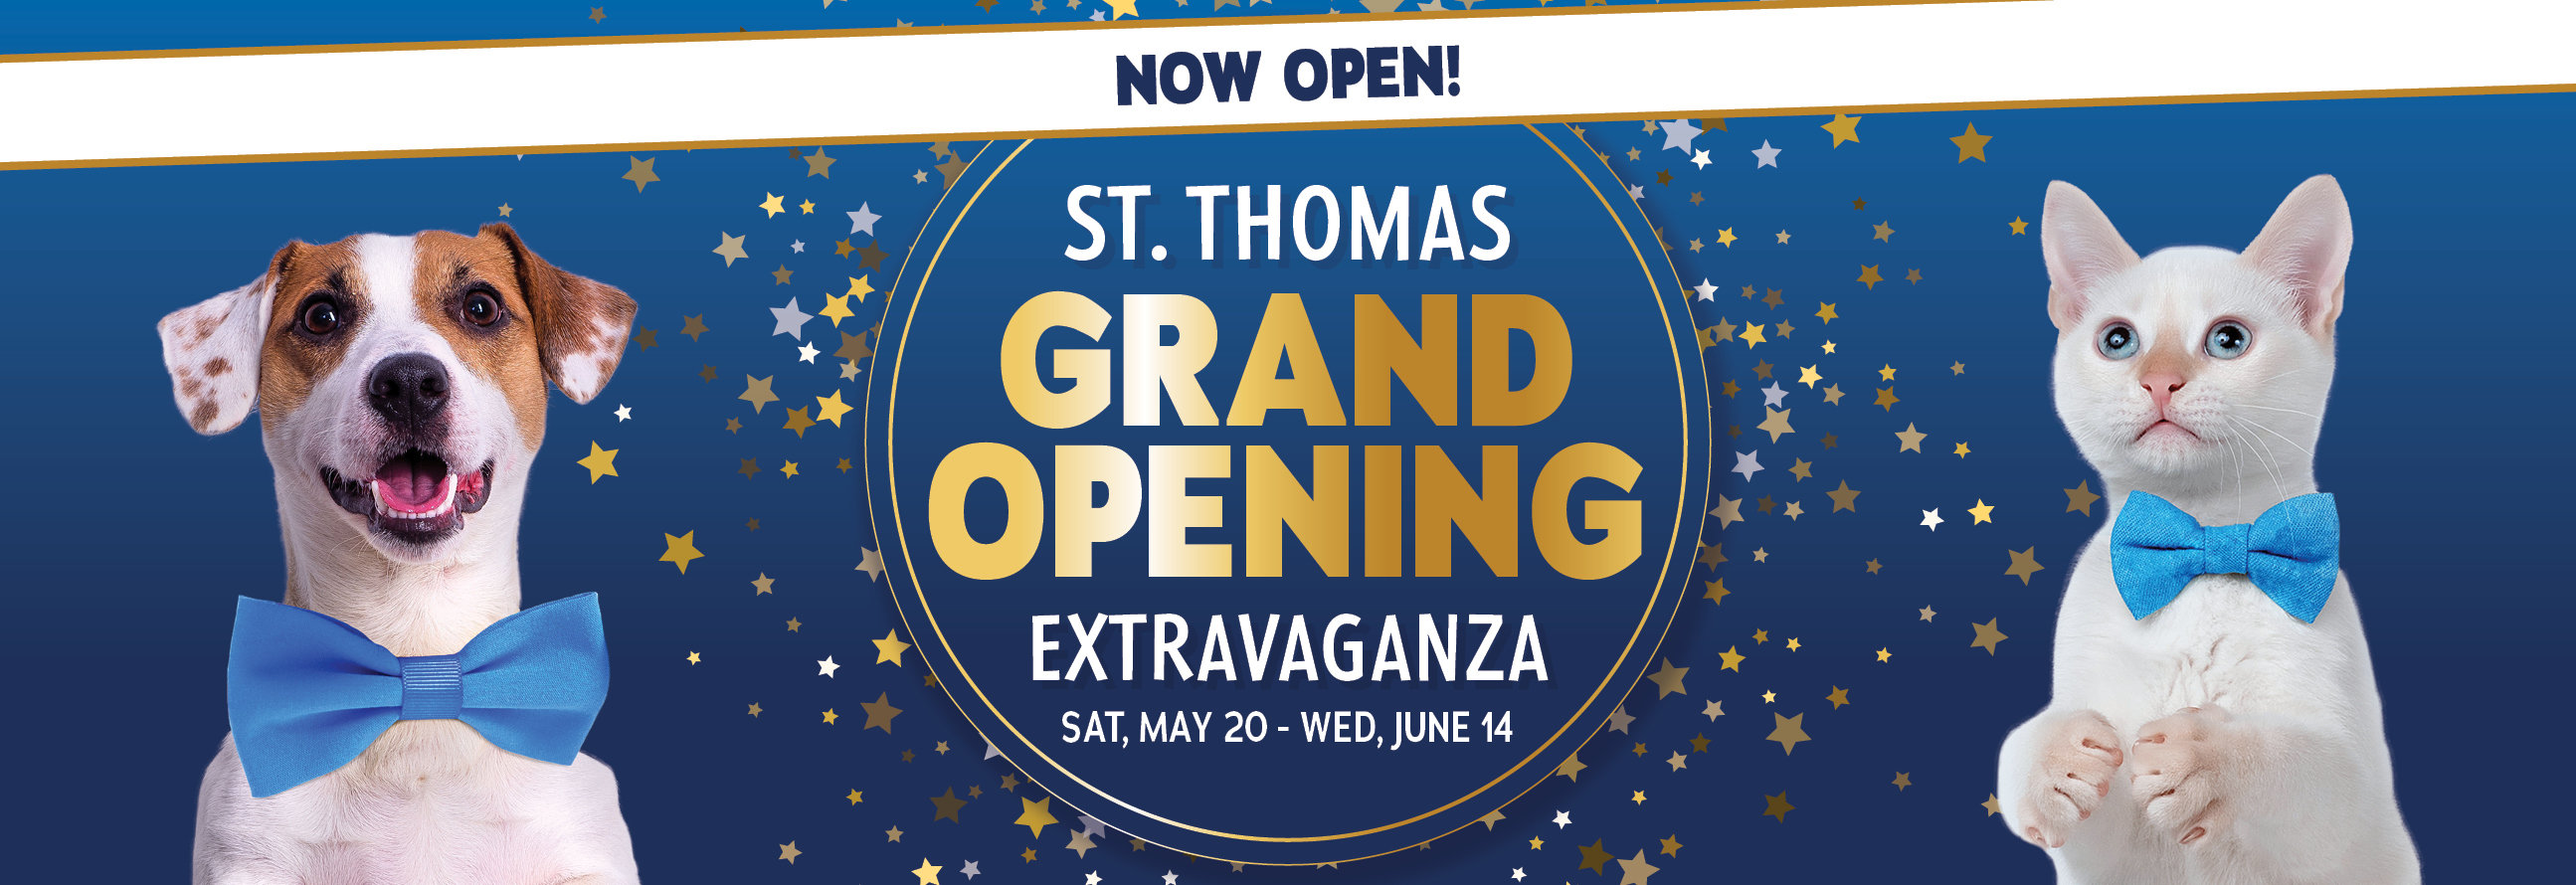 St Thomas now open